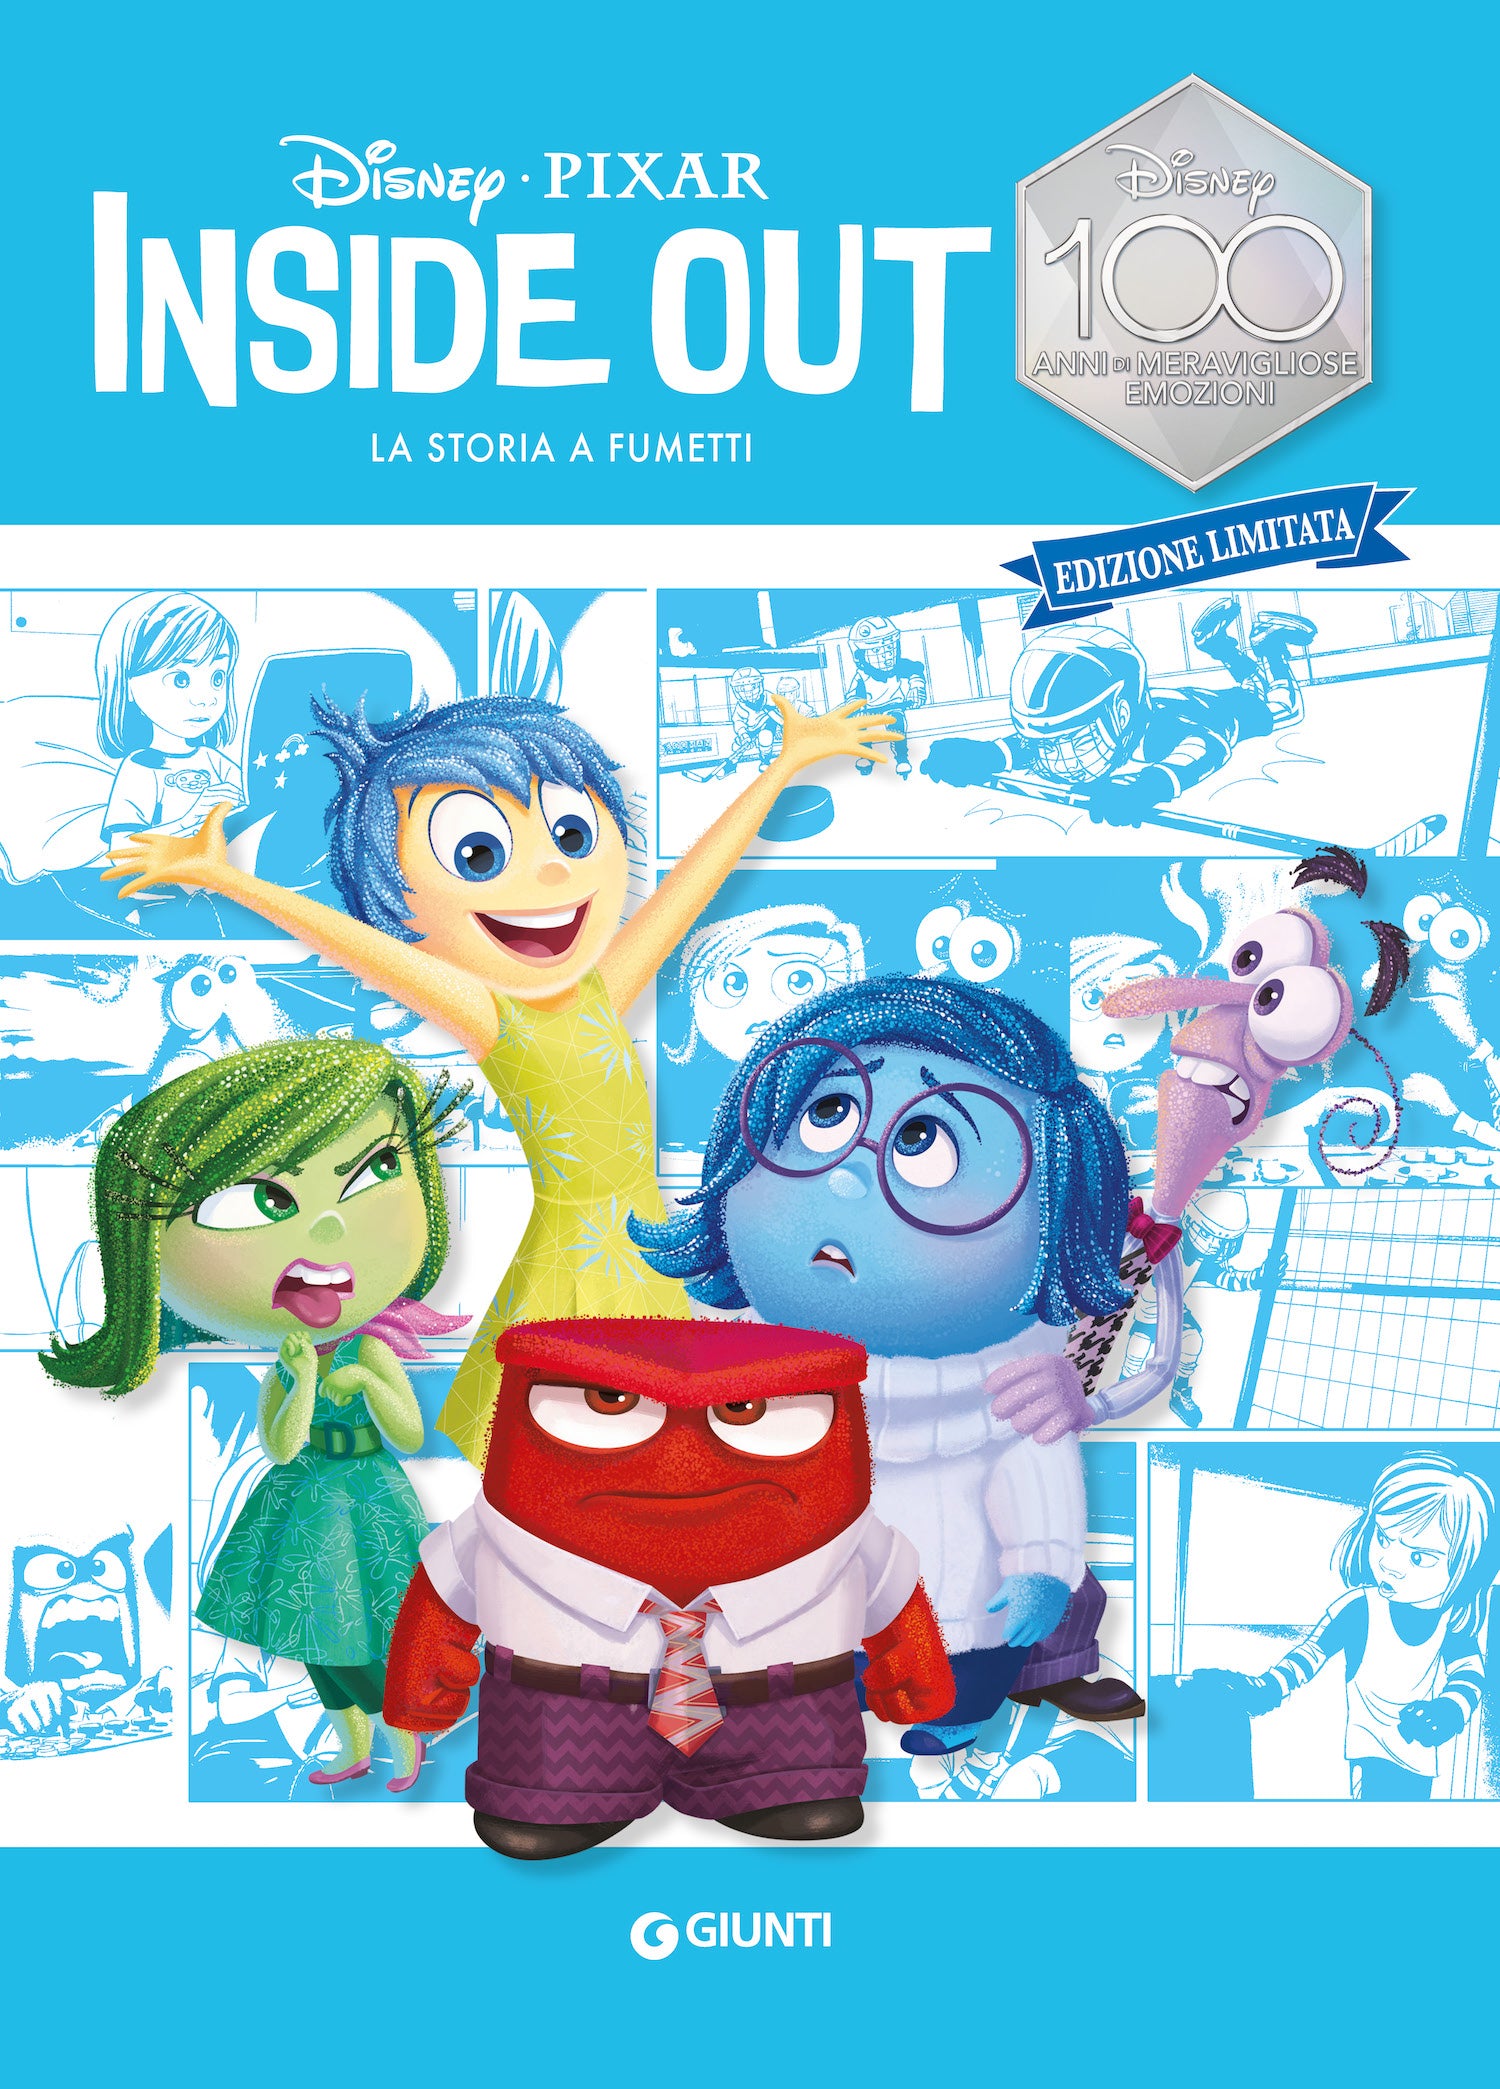 Inside out La storia a fumetti Edizione limitata, Walt Disney